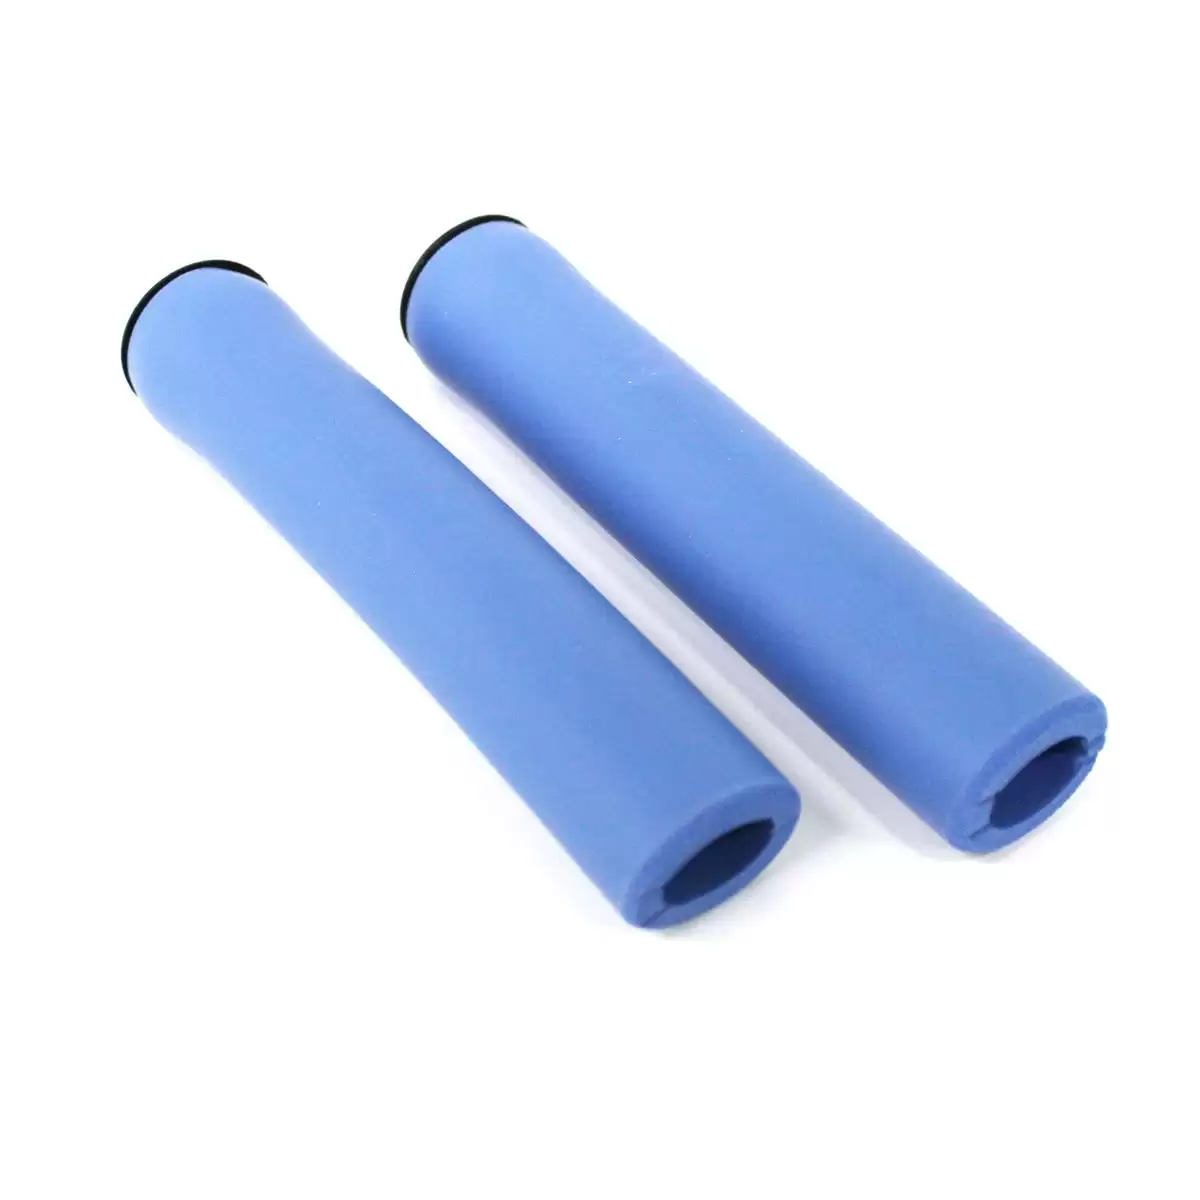 Paar Griffe Super Grip HL-001 Silikon blau 130mm - image